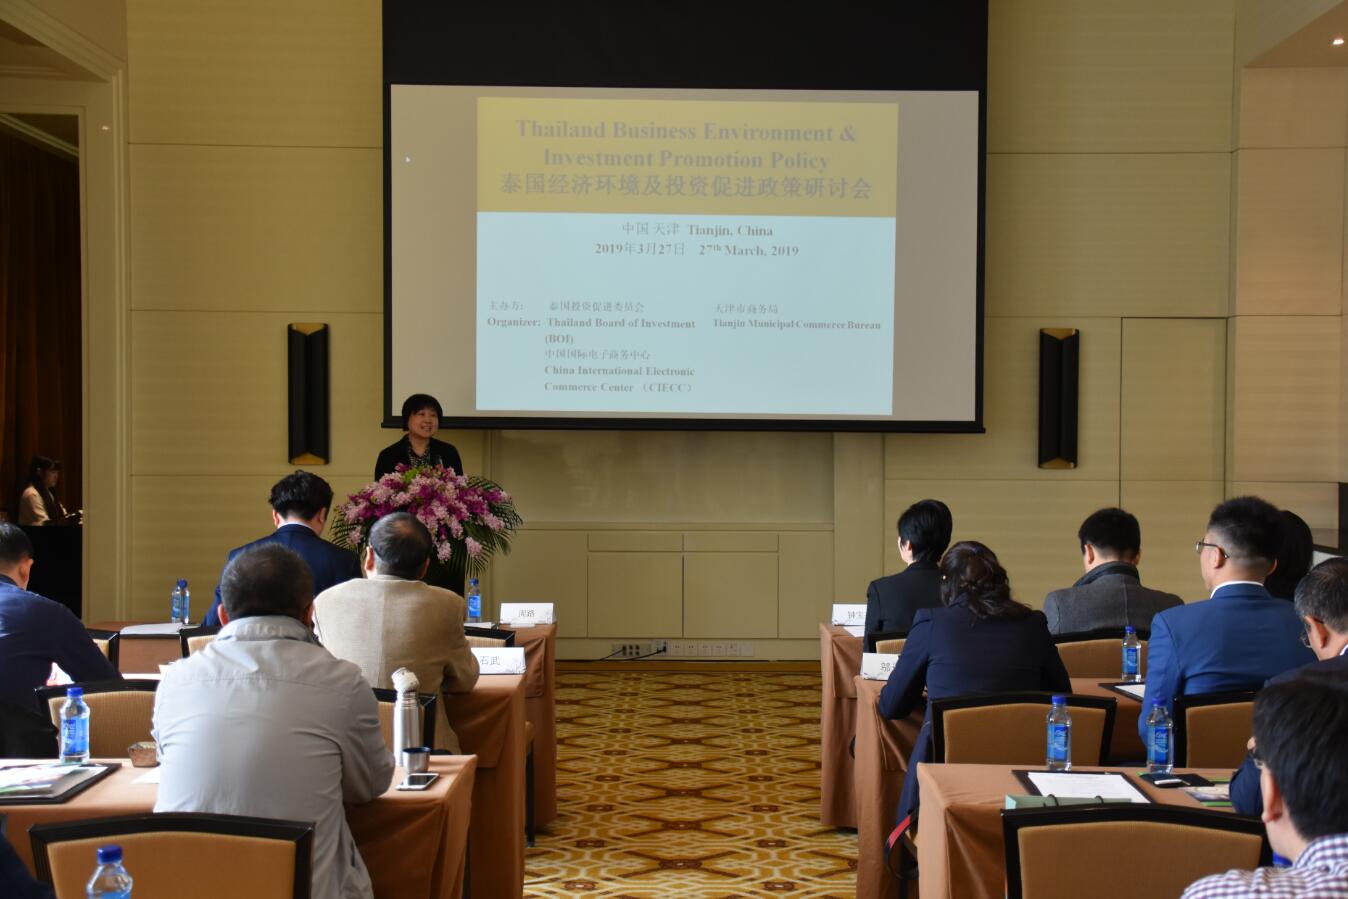 泰國商業環境及投資促進政策研討會在津舉行C